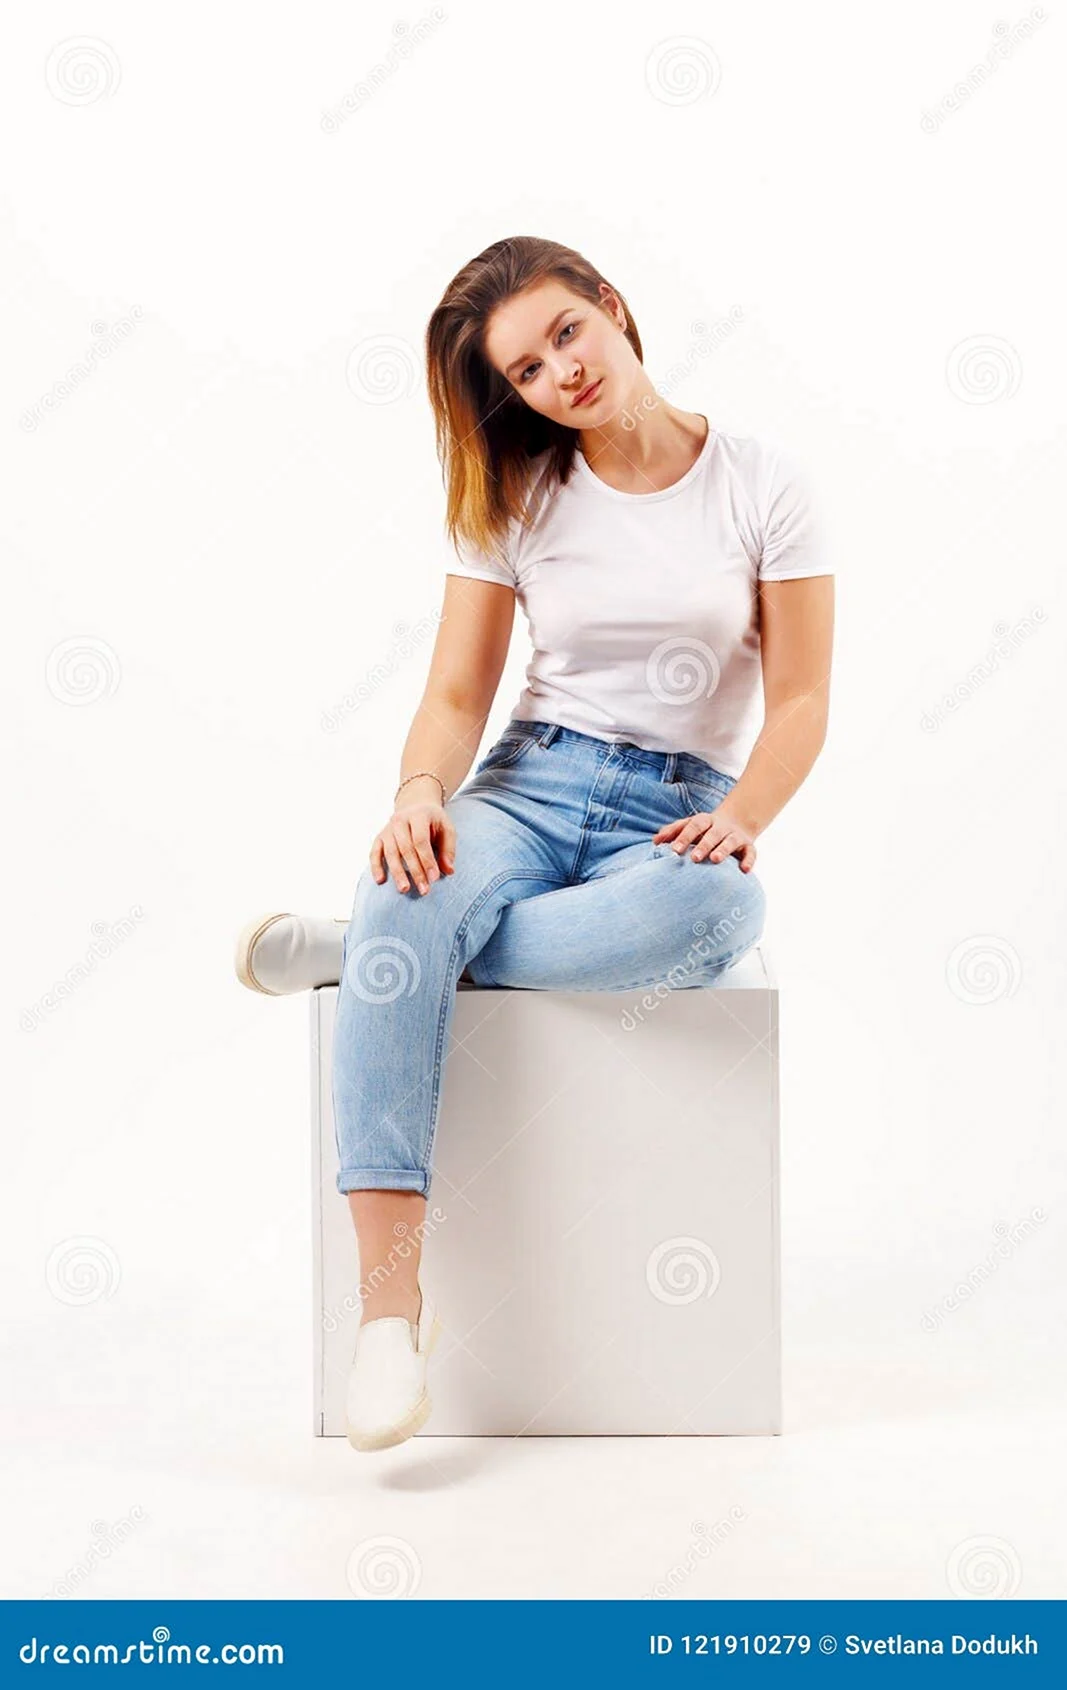 Девушка в джинсах сидит